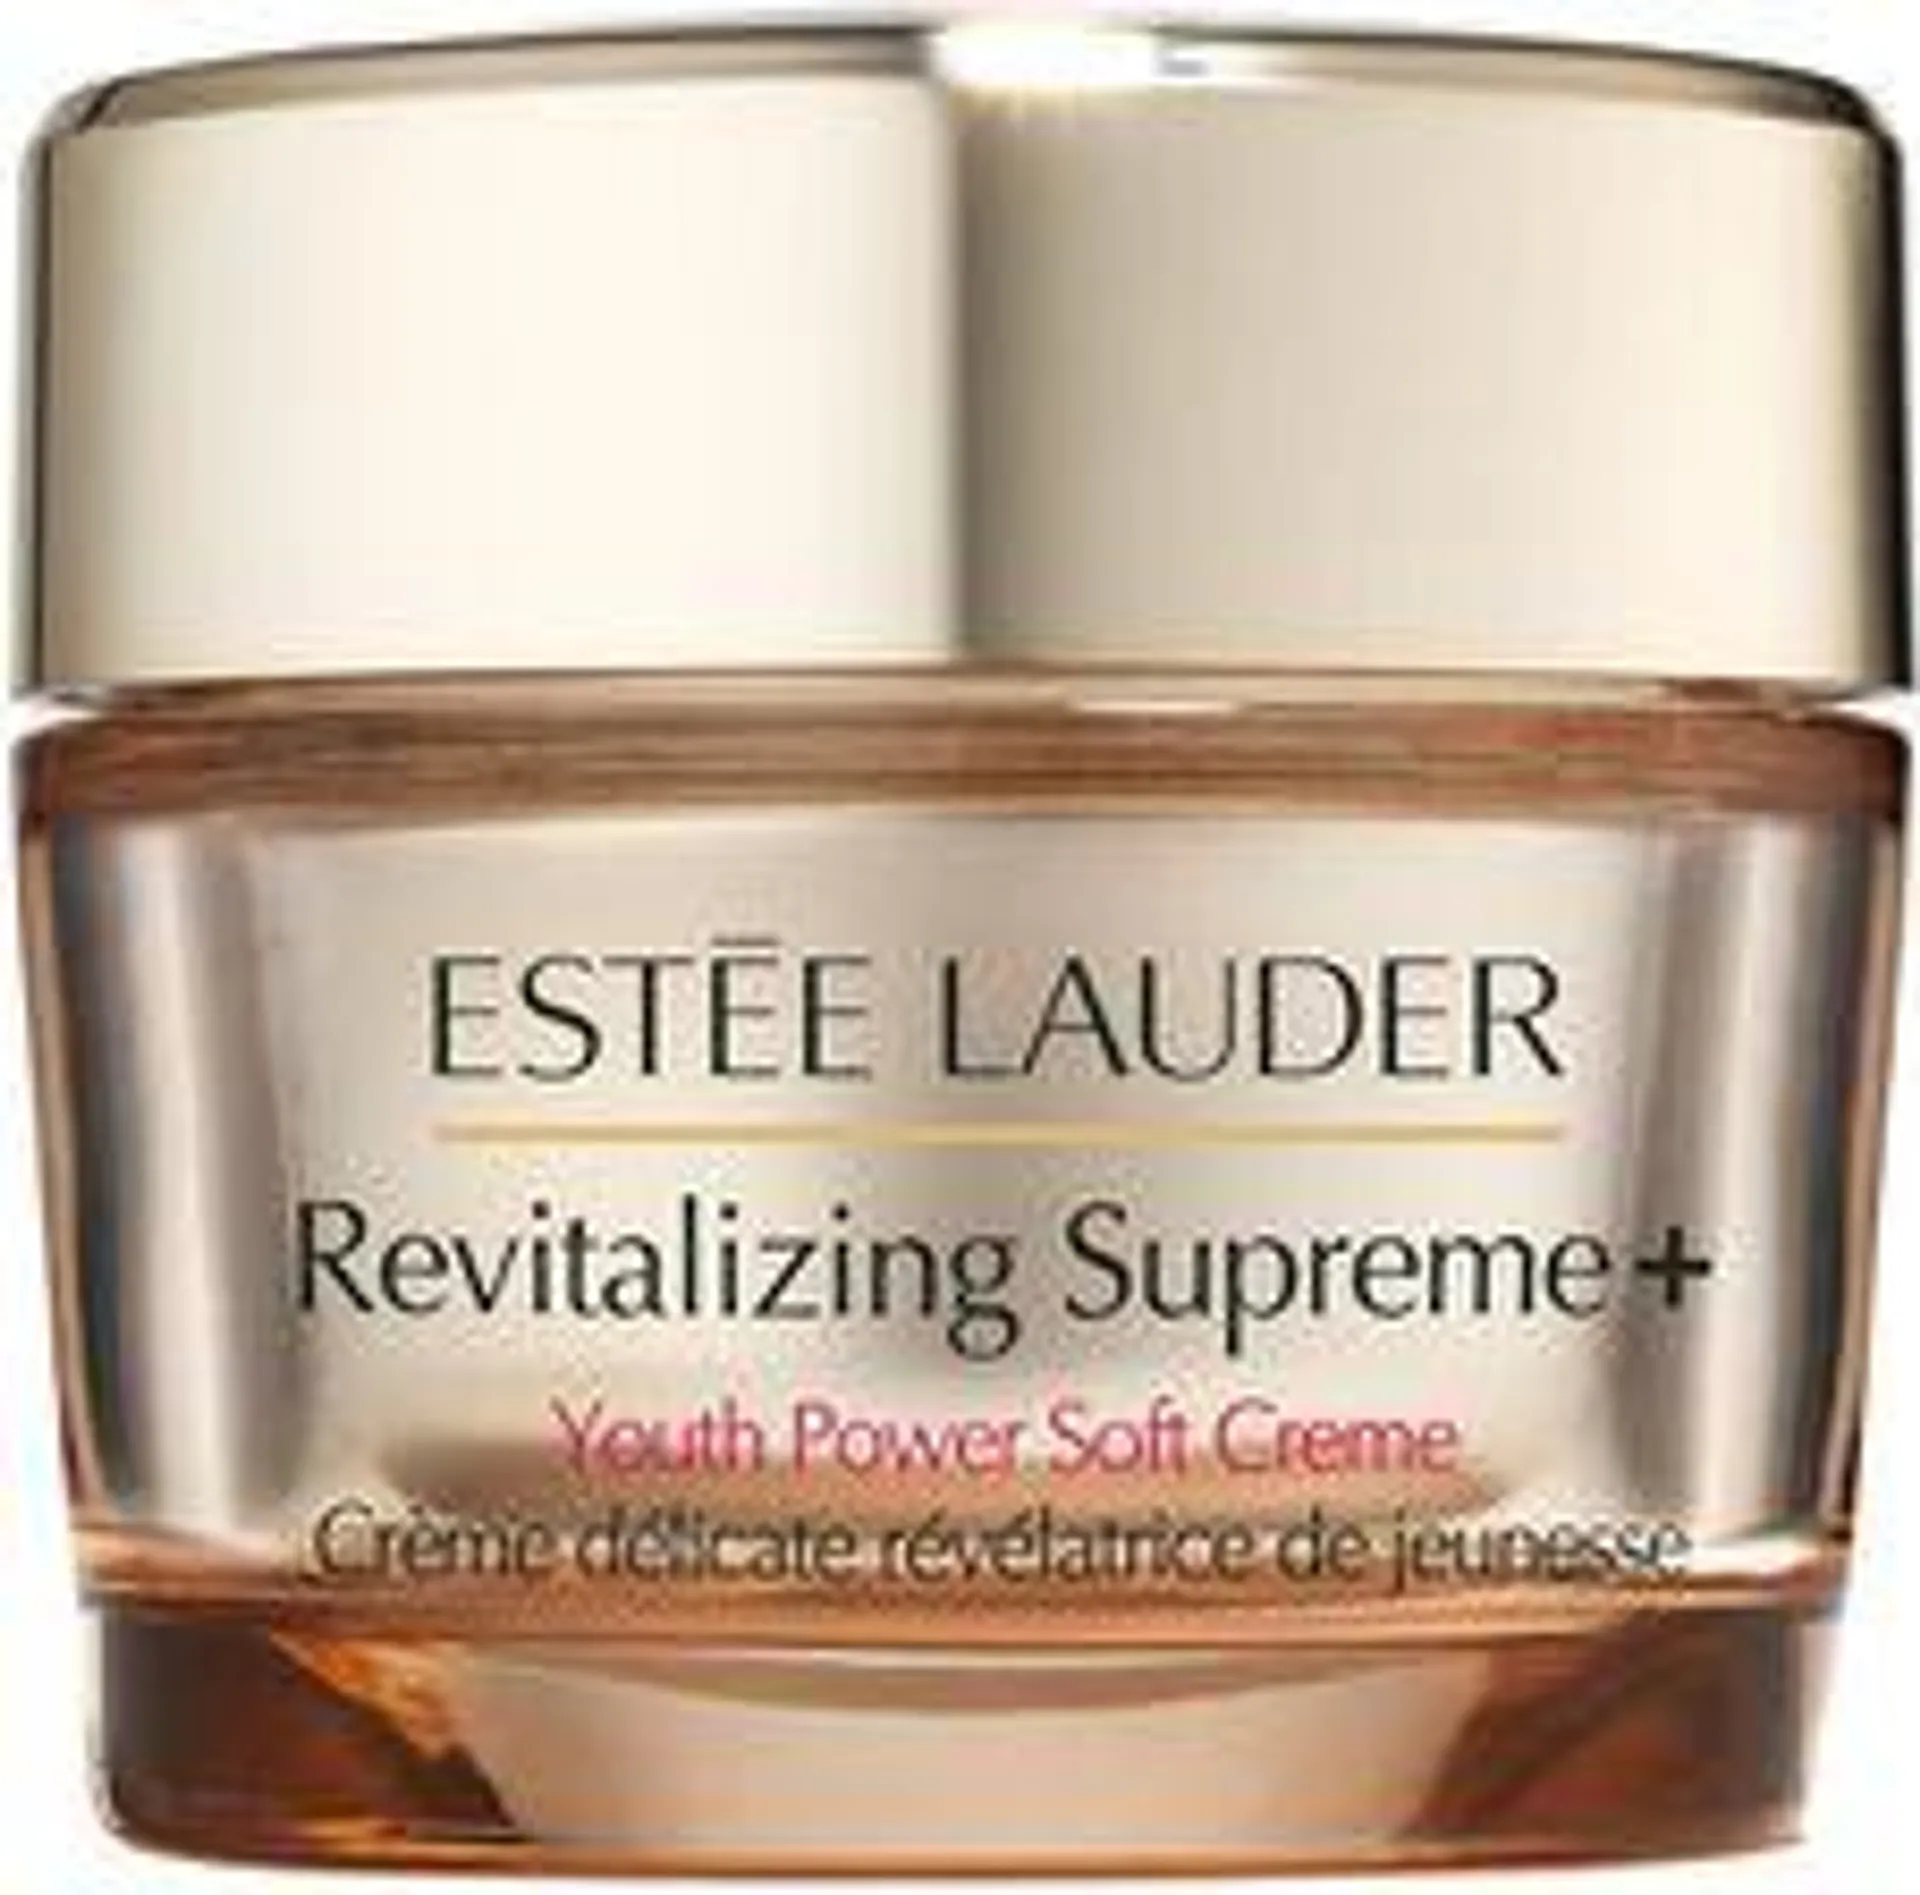 Estee Lauder Revitalizing Supreme+ Delikatny krem wygładzający 50 ml